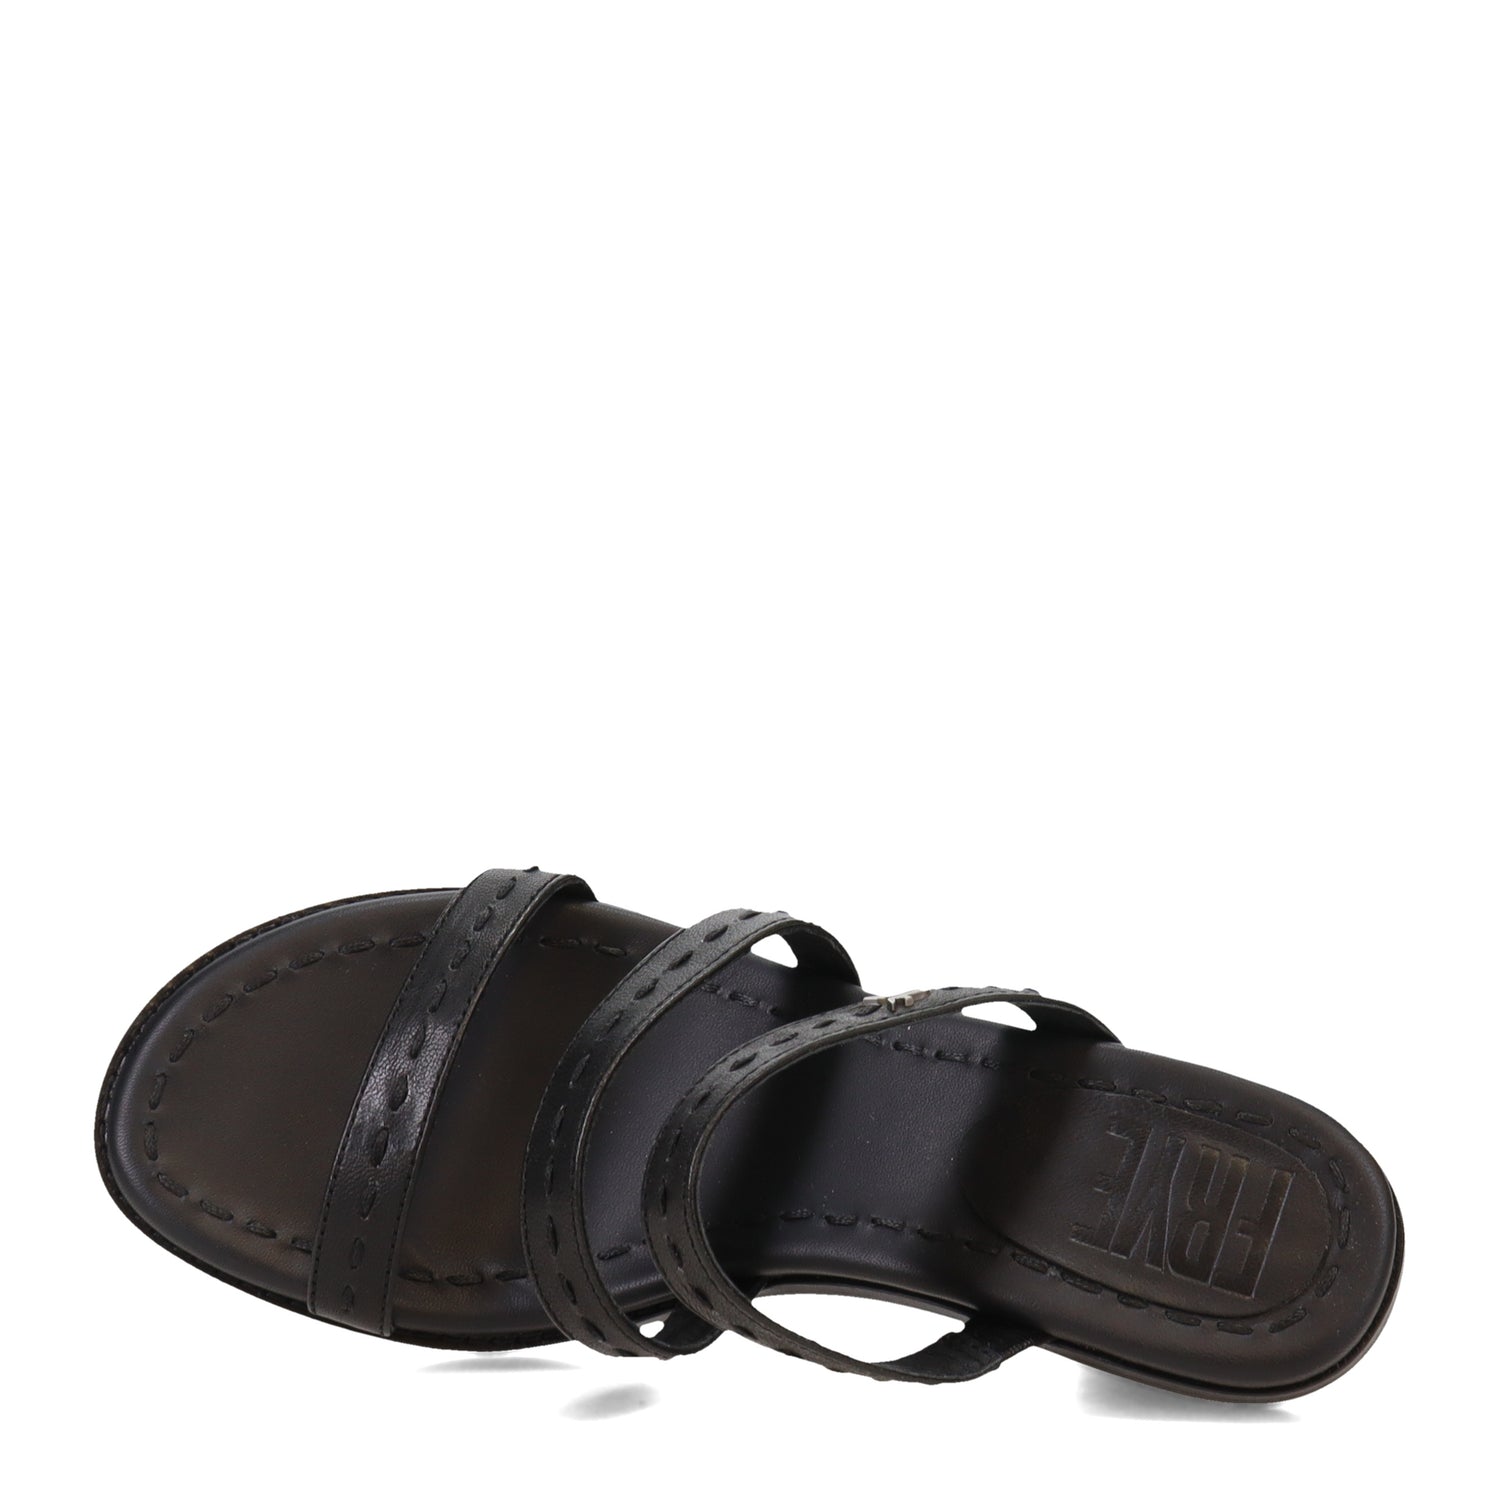 Peltz Shoes  Women's Frye Estelle Strappy Sandal BLACK FR40337-BLAC